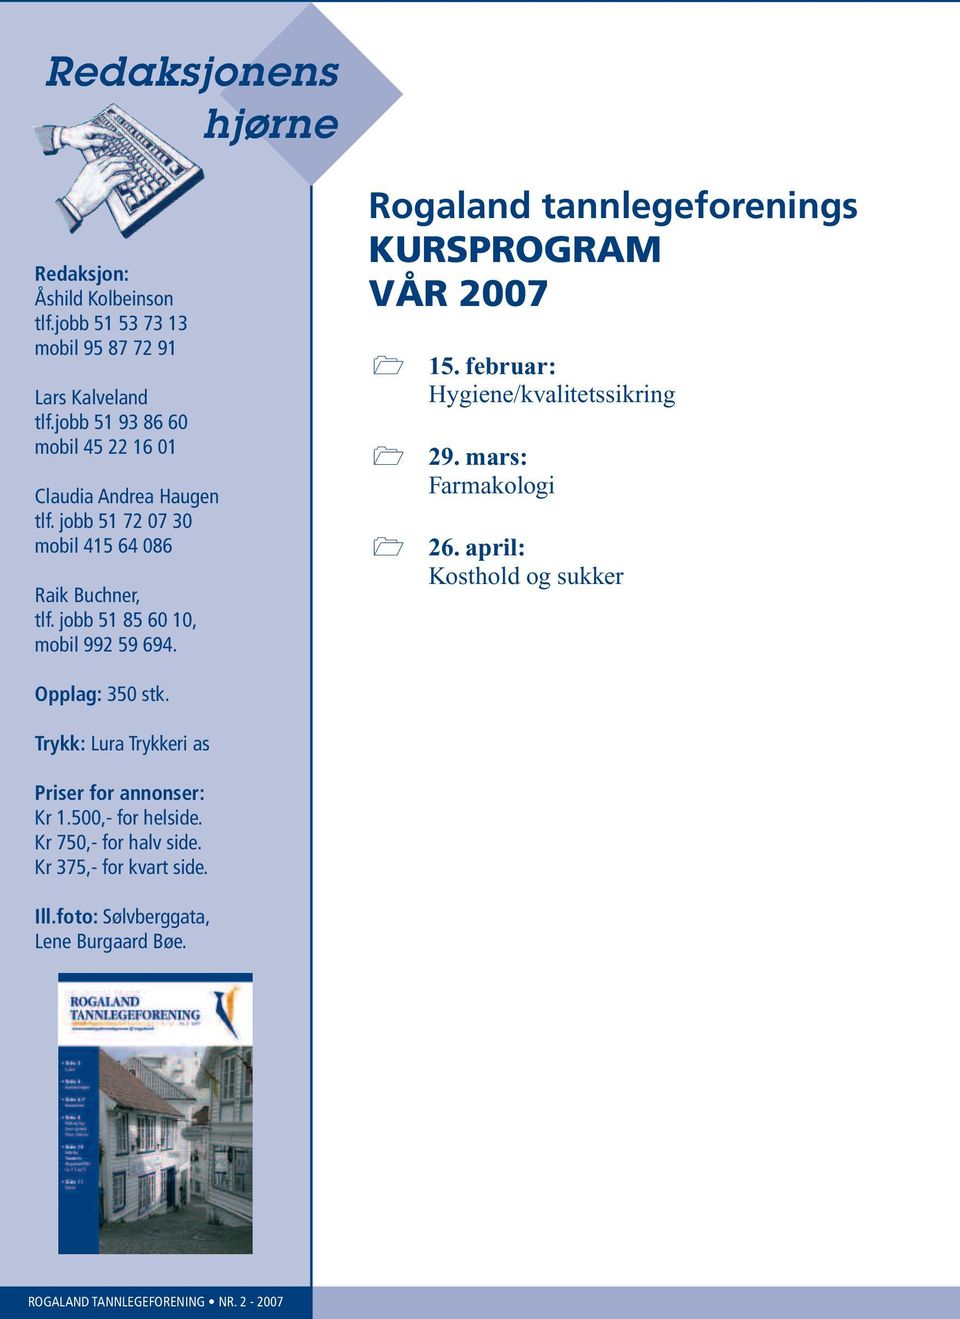 jobb 51 85 60 10, mobil 992 59 694. Rogaland tannlegeforenings KURSPROGRAM VÅR 2007 15. februar: Hygiene/kvalitetssikring 29.